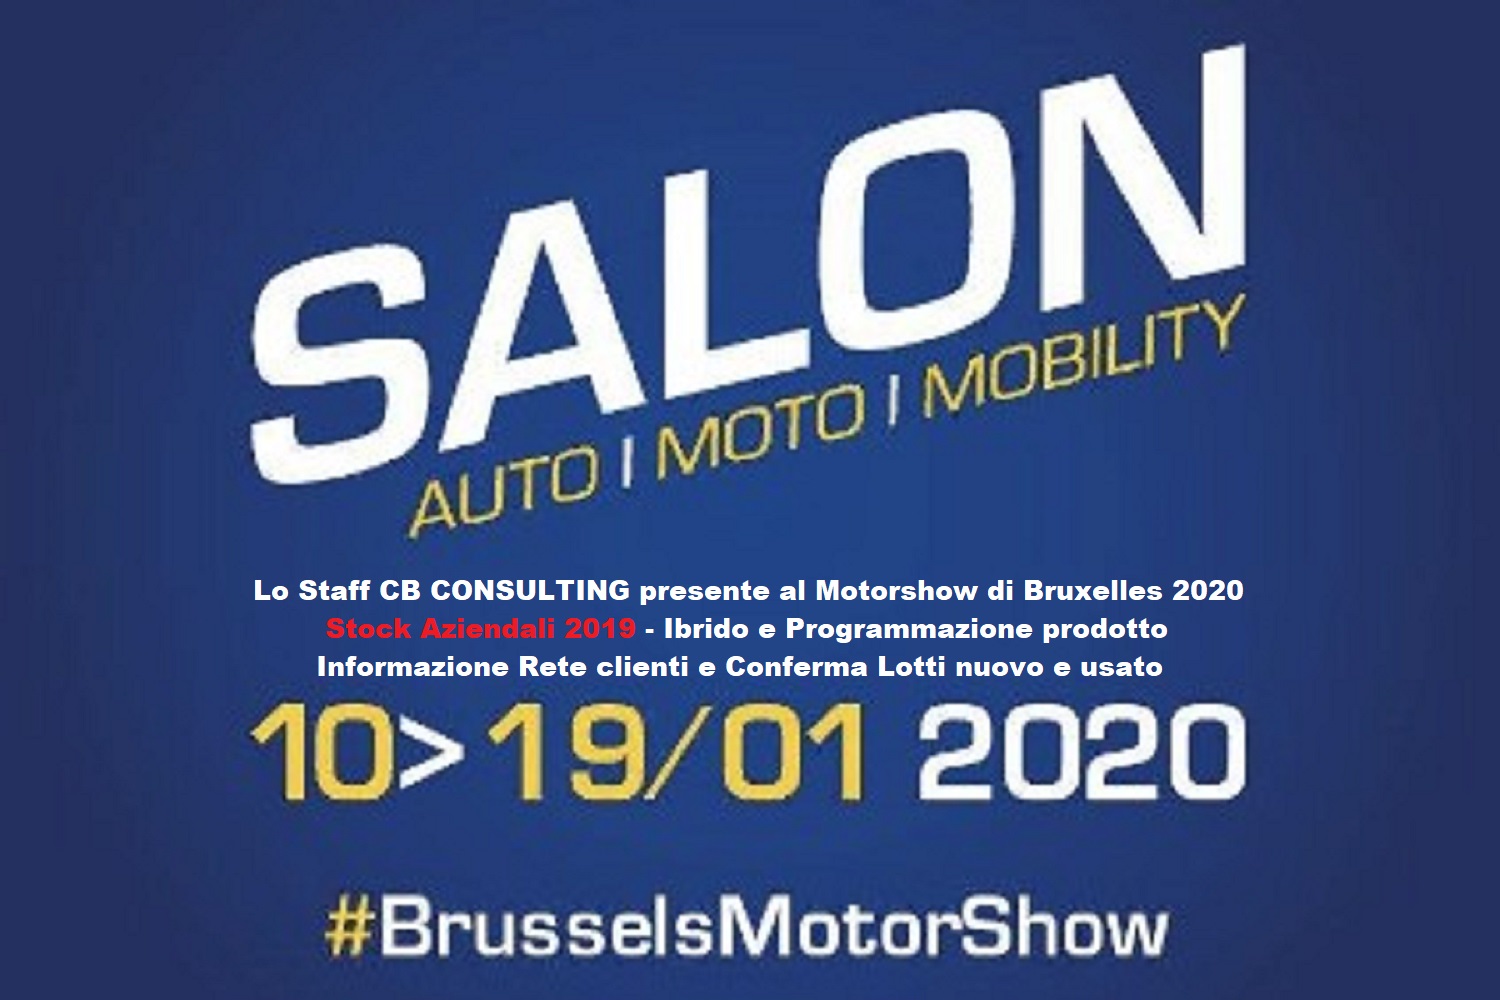 CB & Bruxelles Motorshow 2020